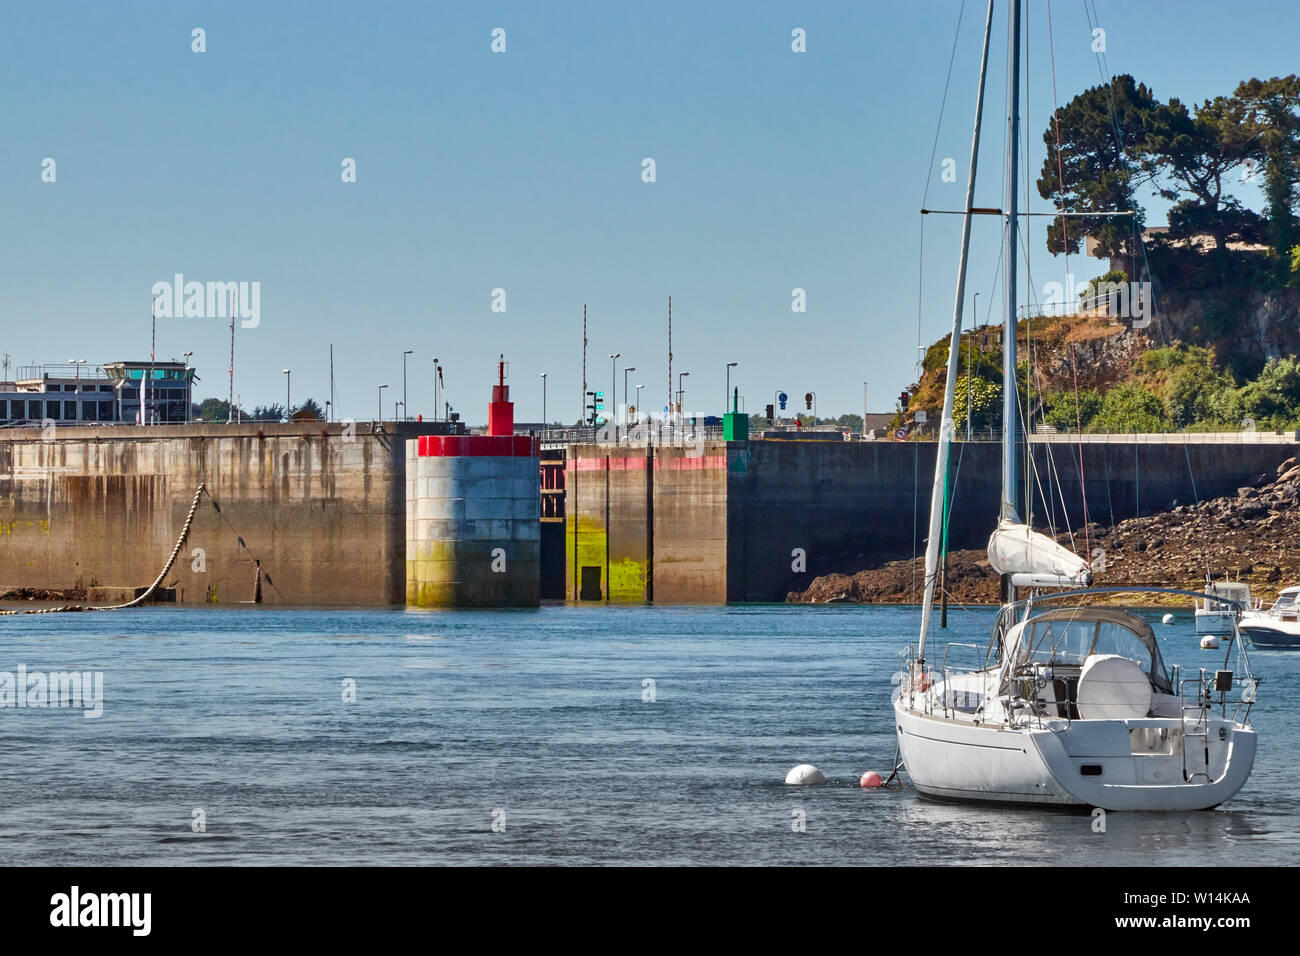 Image de l'écluse du Barrage de la Rance, Saint-Malo, France, du bord de mer. Banque D'Images